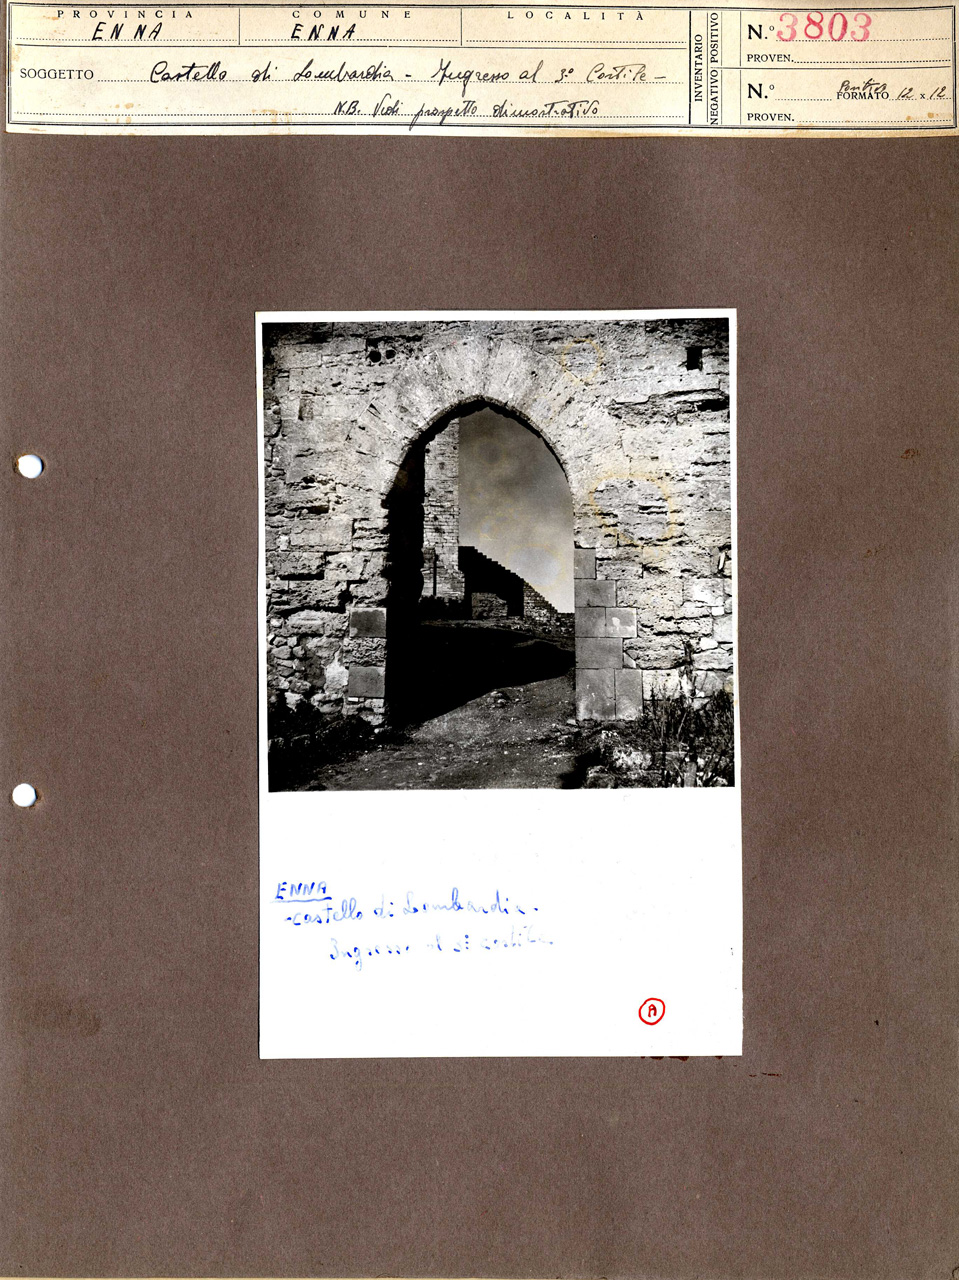 Architettura militare - fortificazioni (positivo, elemento-parte componente, scheda di supporto) di Anonimo <1945 - 1955> (attribuito), Ente Provinciale per il Turismo - Enna (metà XX)